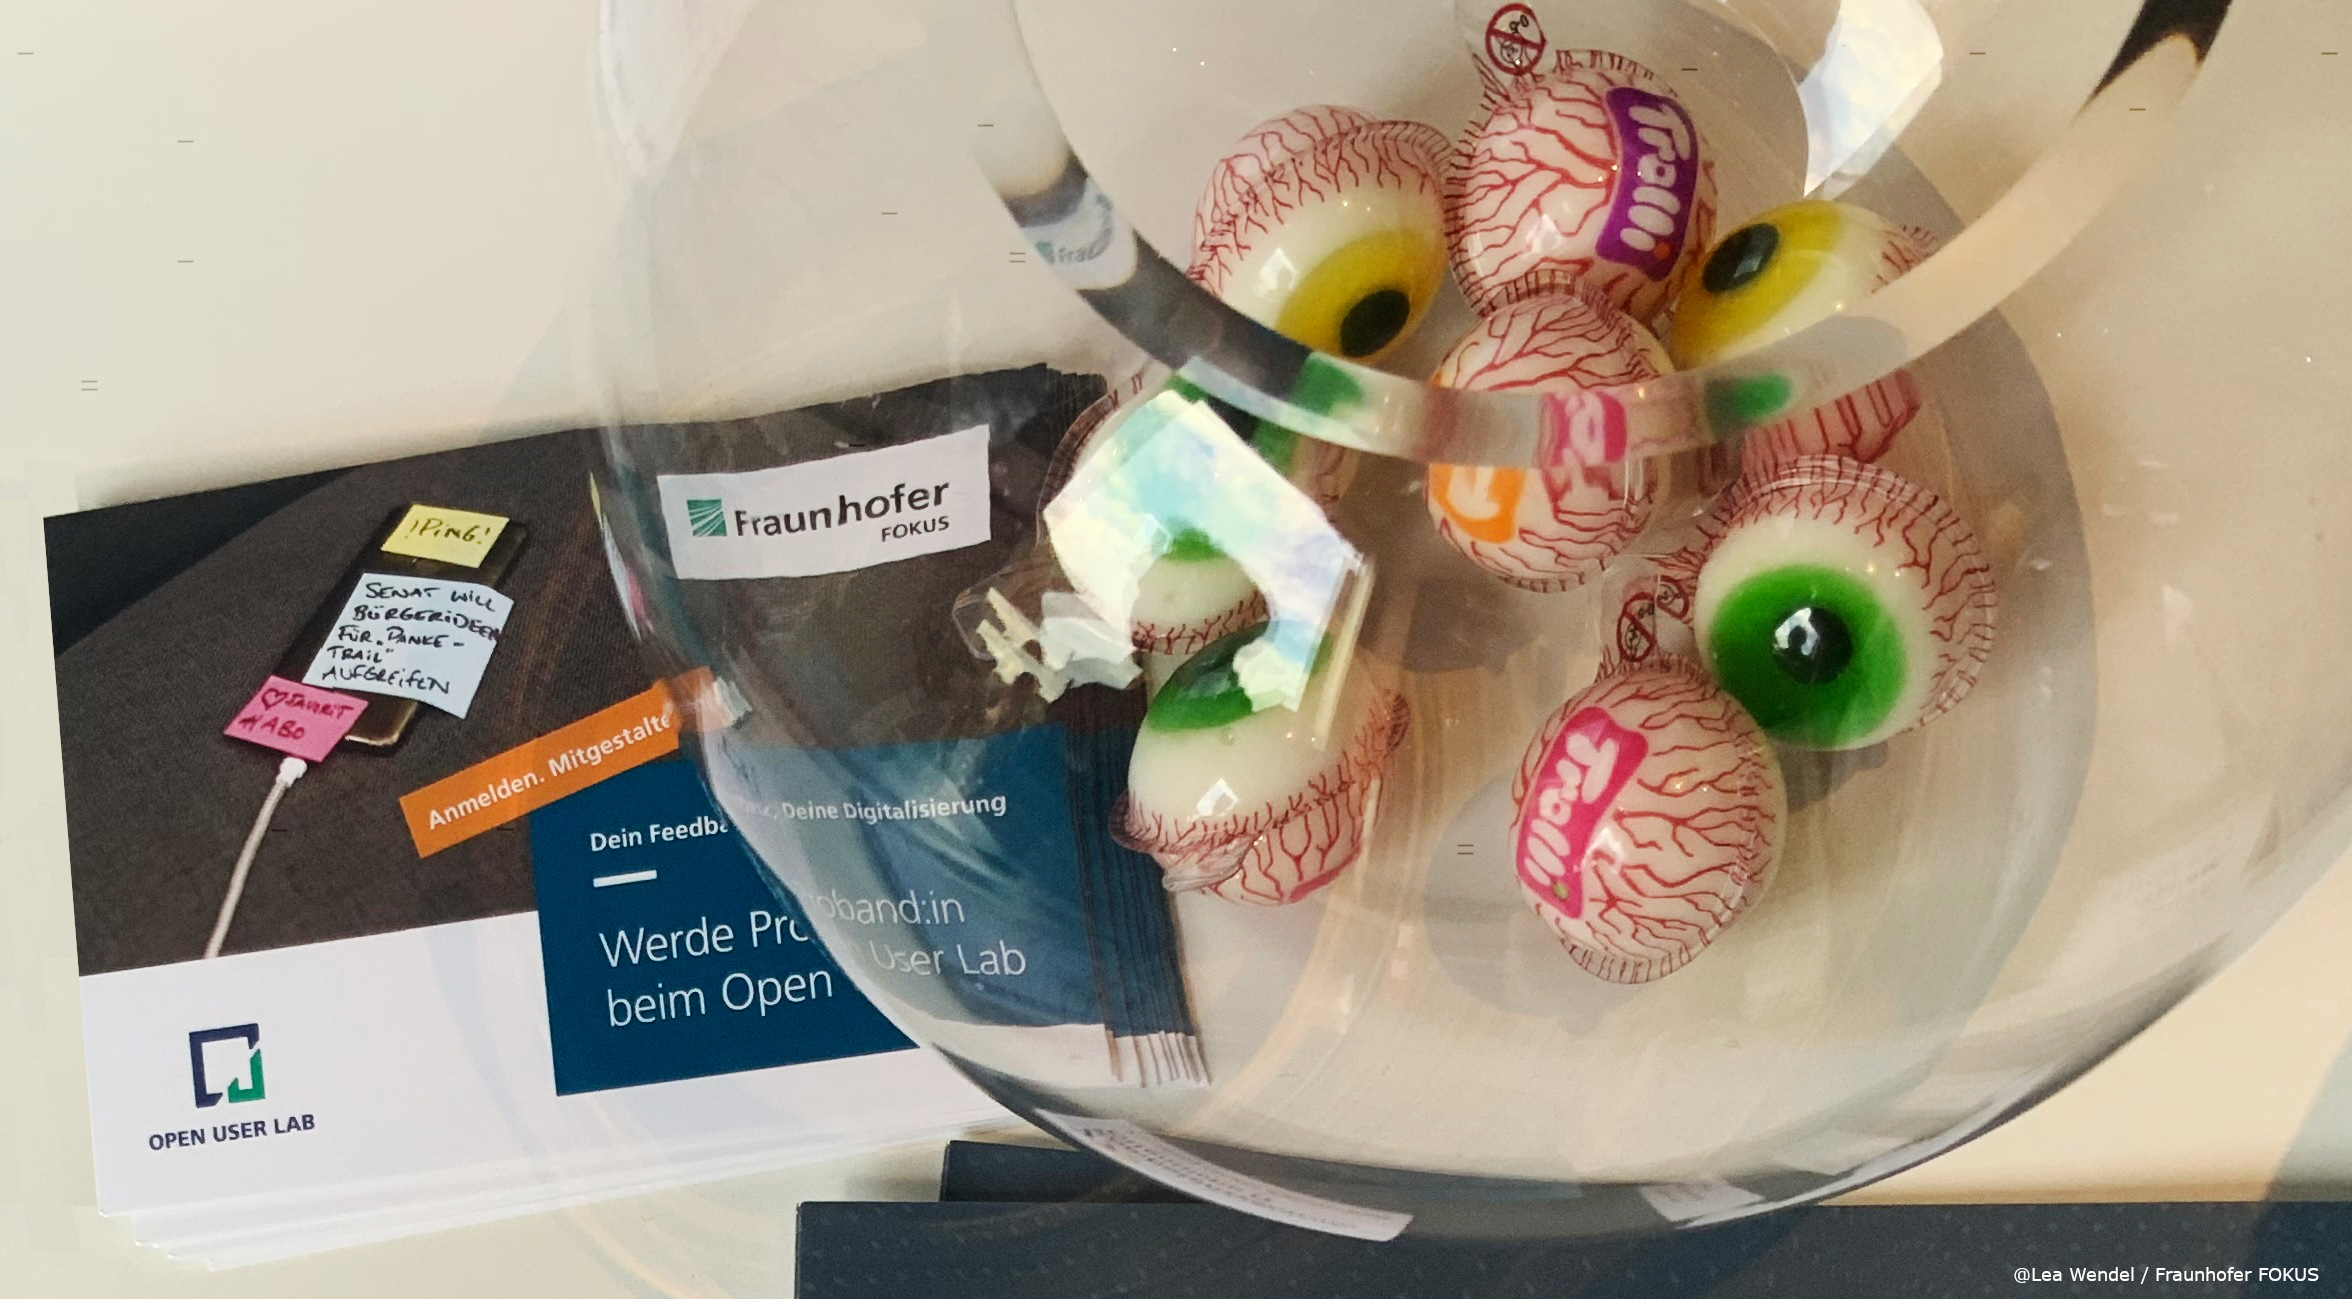 Auf einem Tisch liegen Flyer mit dem Aufdruck "Werde Proband:in beim Open User Lab", darüber steht eine runde Vase mit Trolli Süßigkeiten Augen